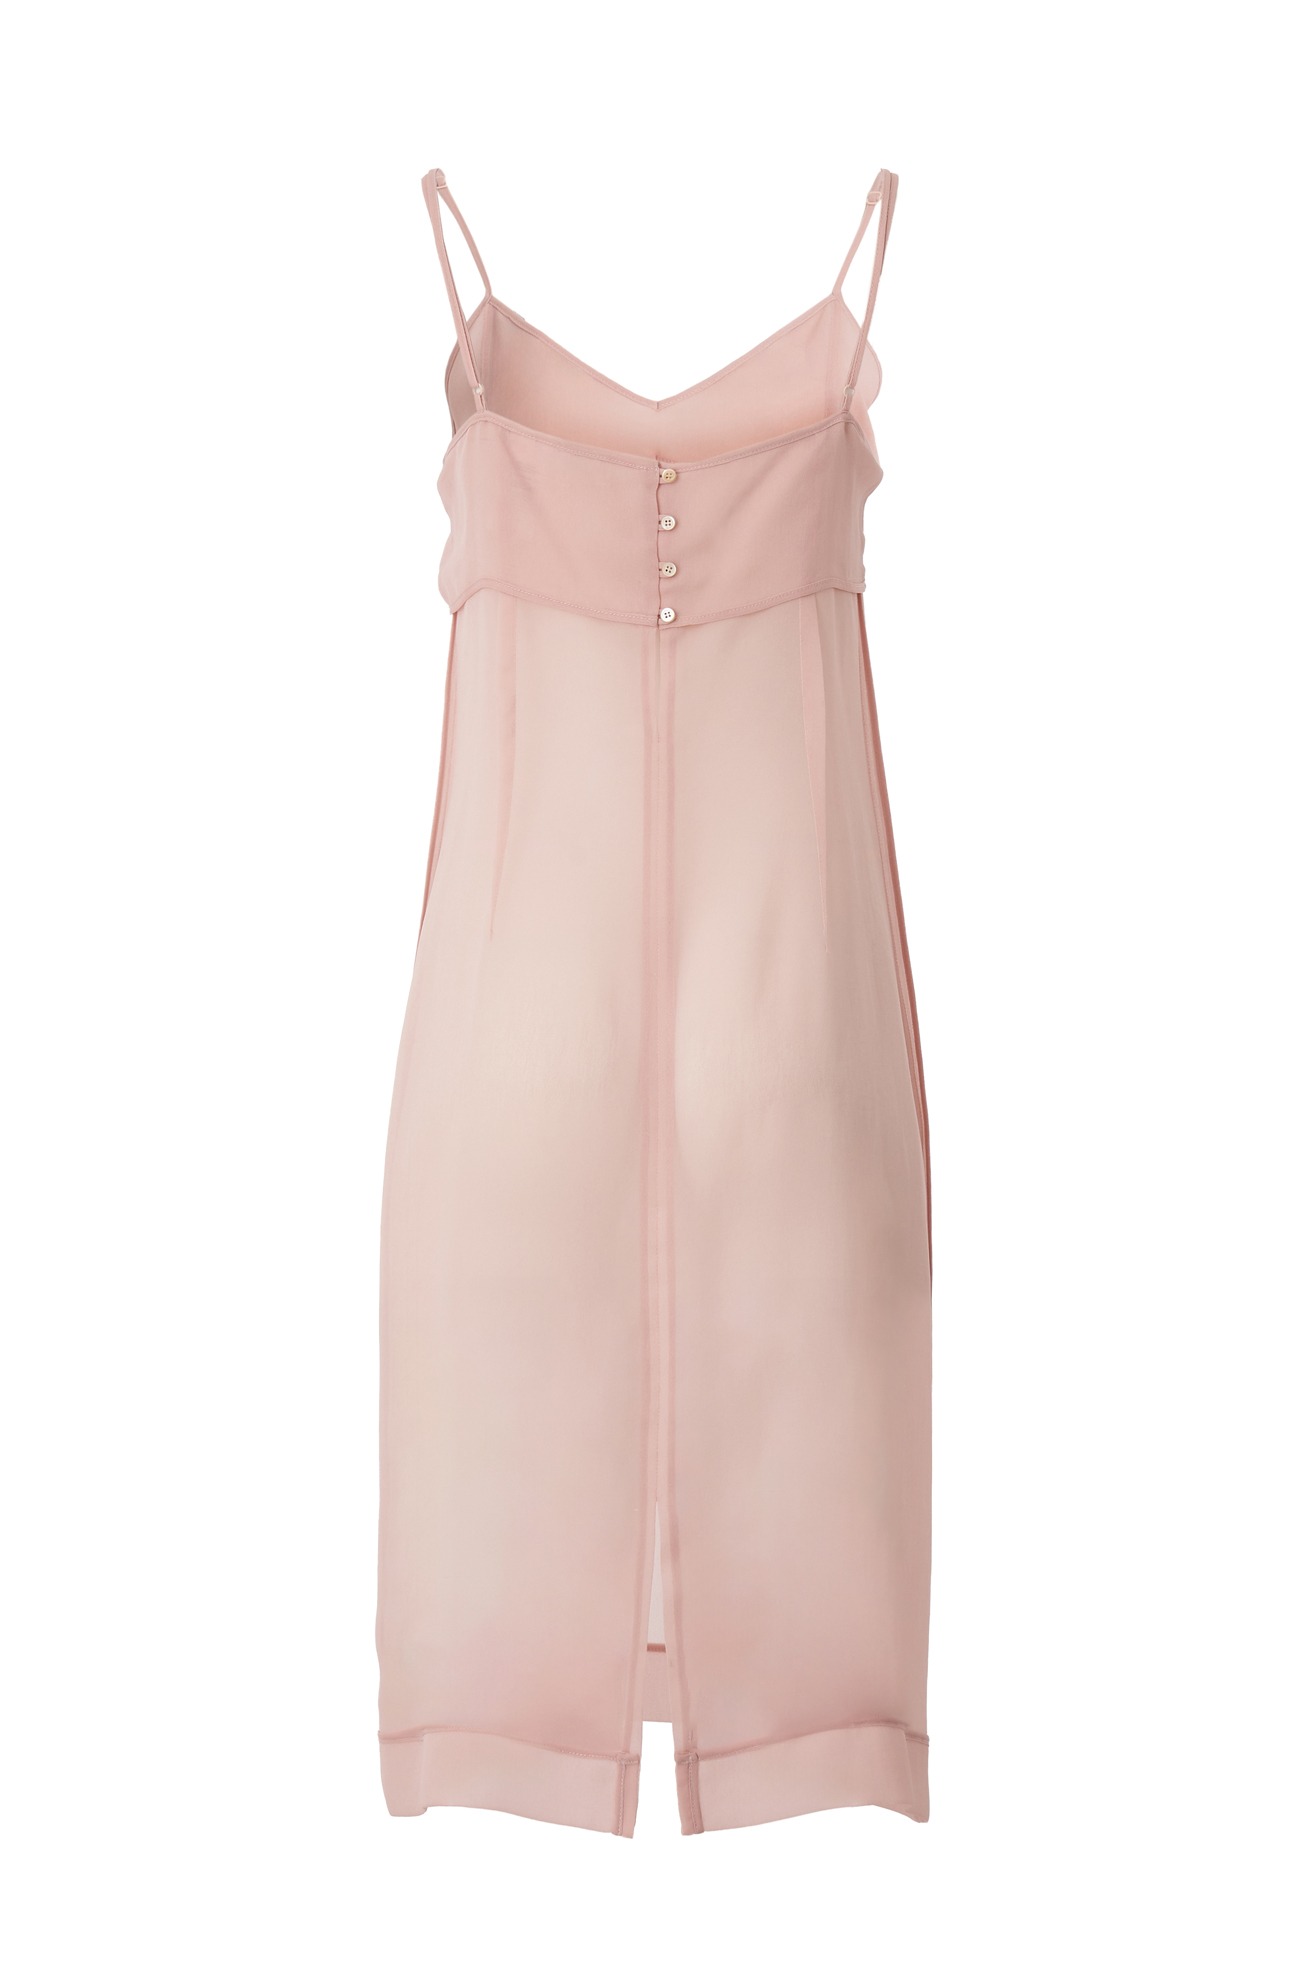 Sheer Dress (Pink)